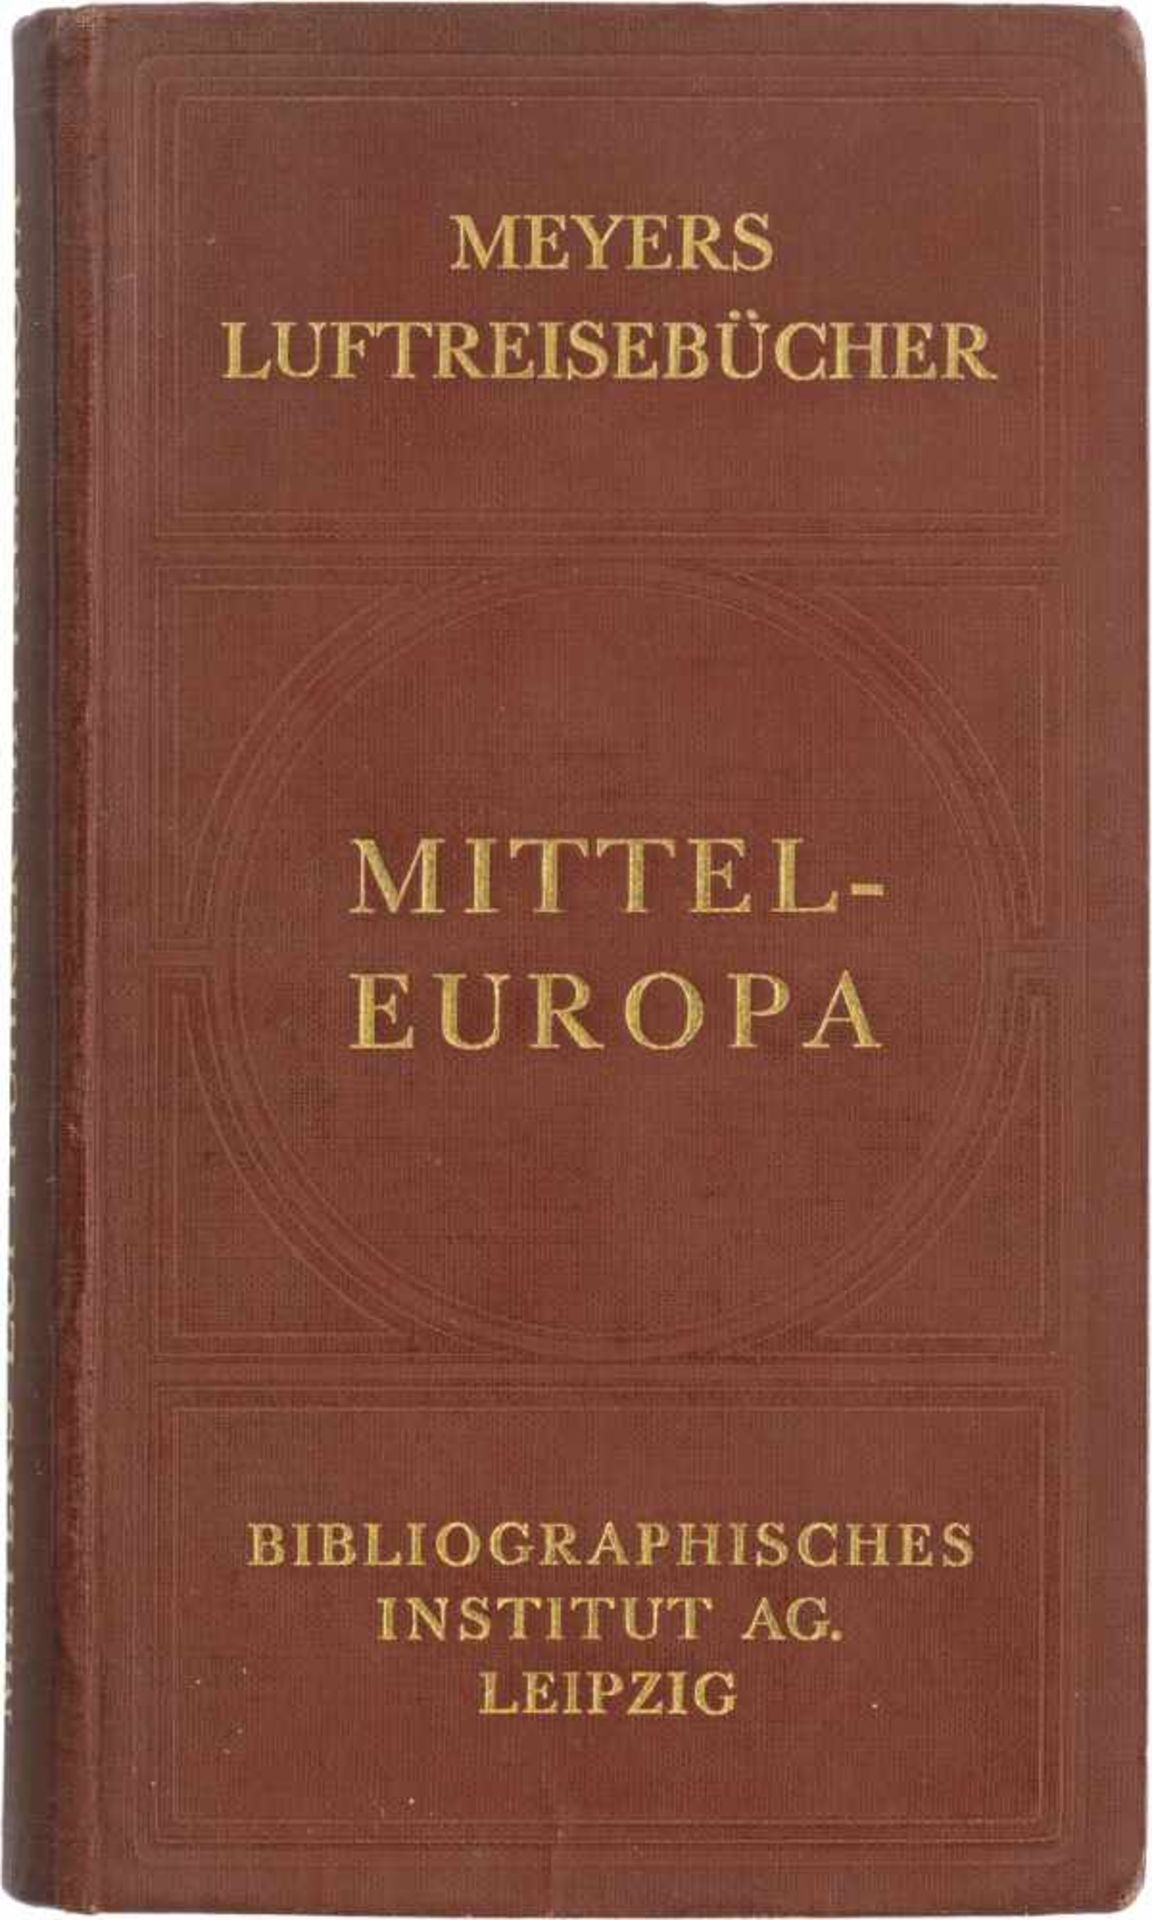 Meyers Luftreisebücher: Mitteleuropa.Meyers Luftreisebücher. Mitteleuropa. Unter Mitwirkung der